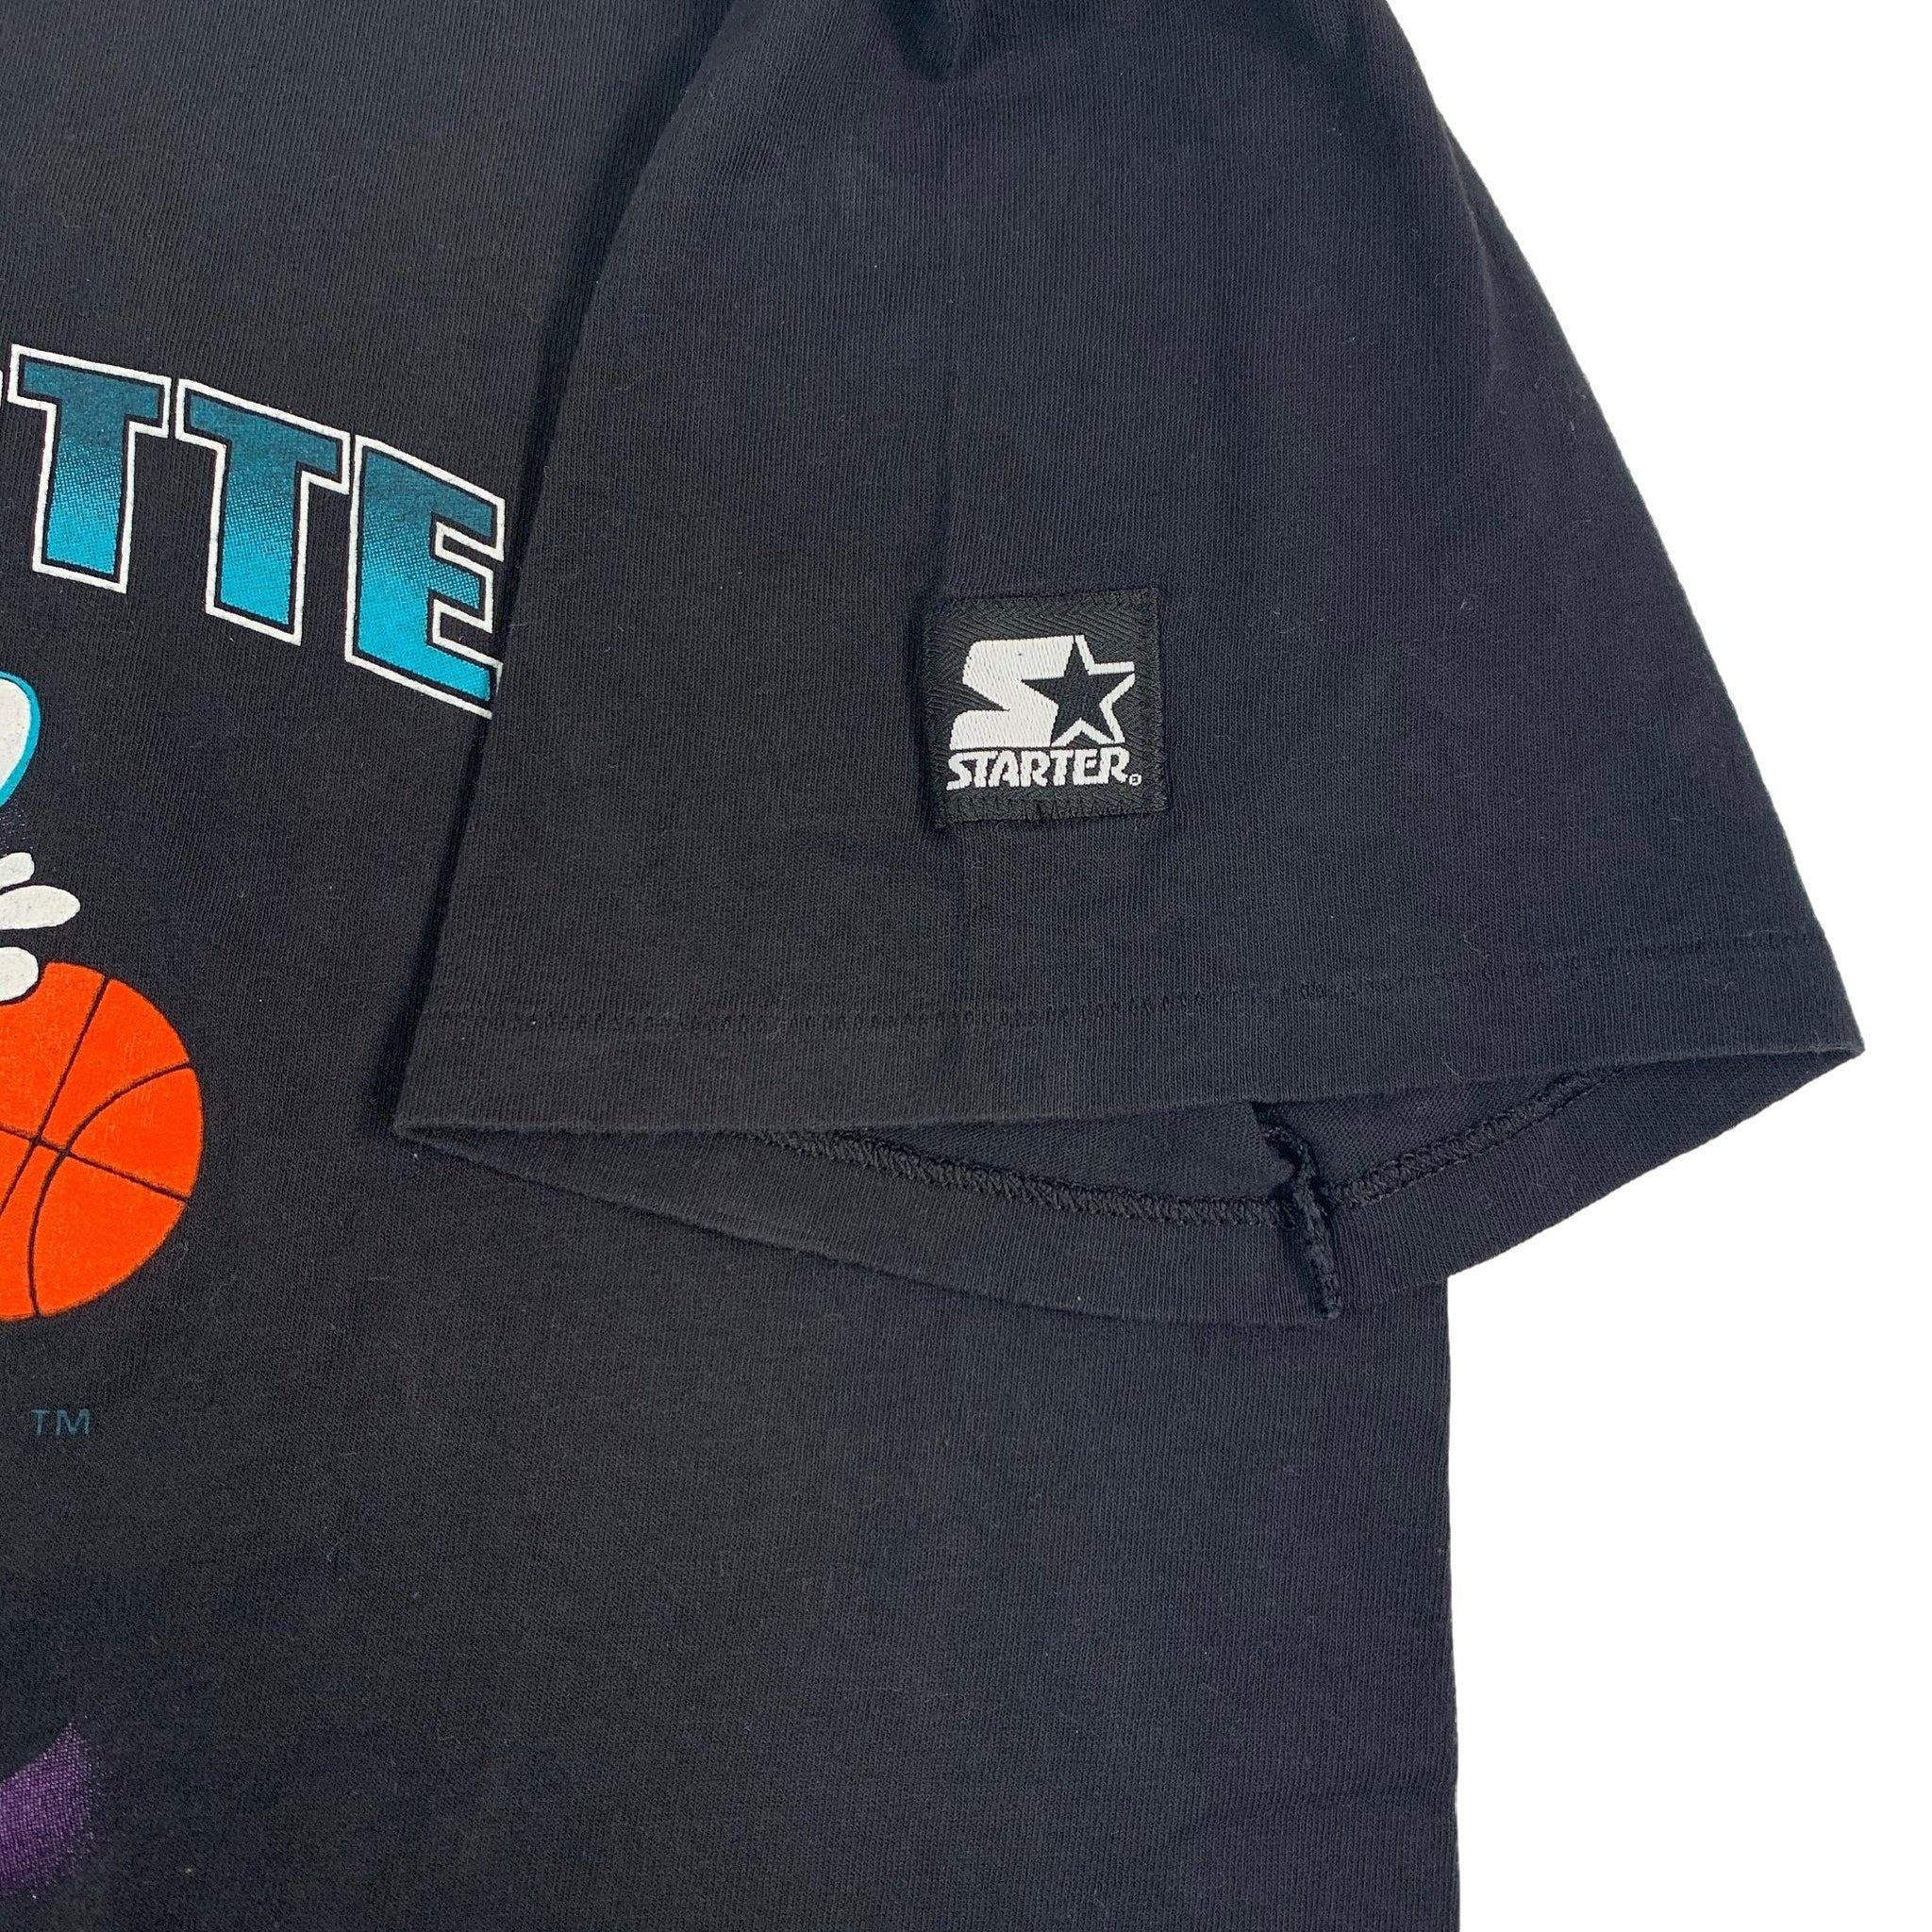 Vintage Starter Charlotte Hornets Black Baseball Jersey Size Large